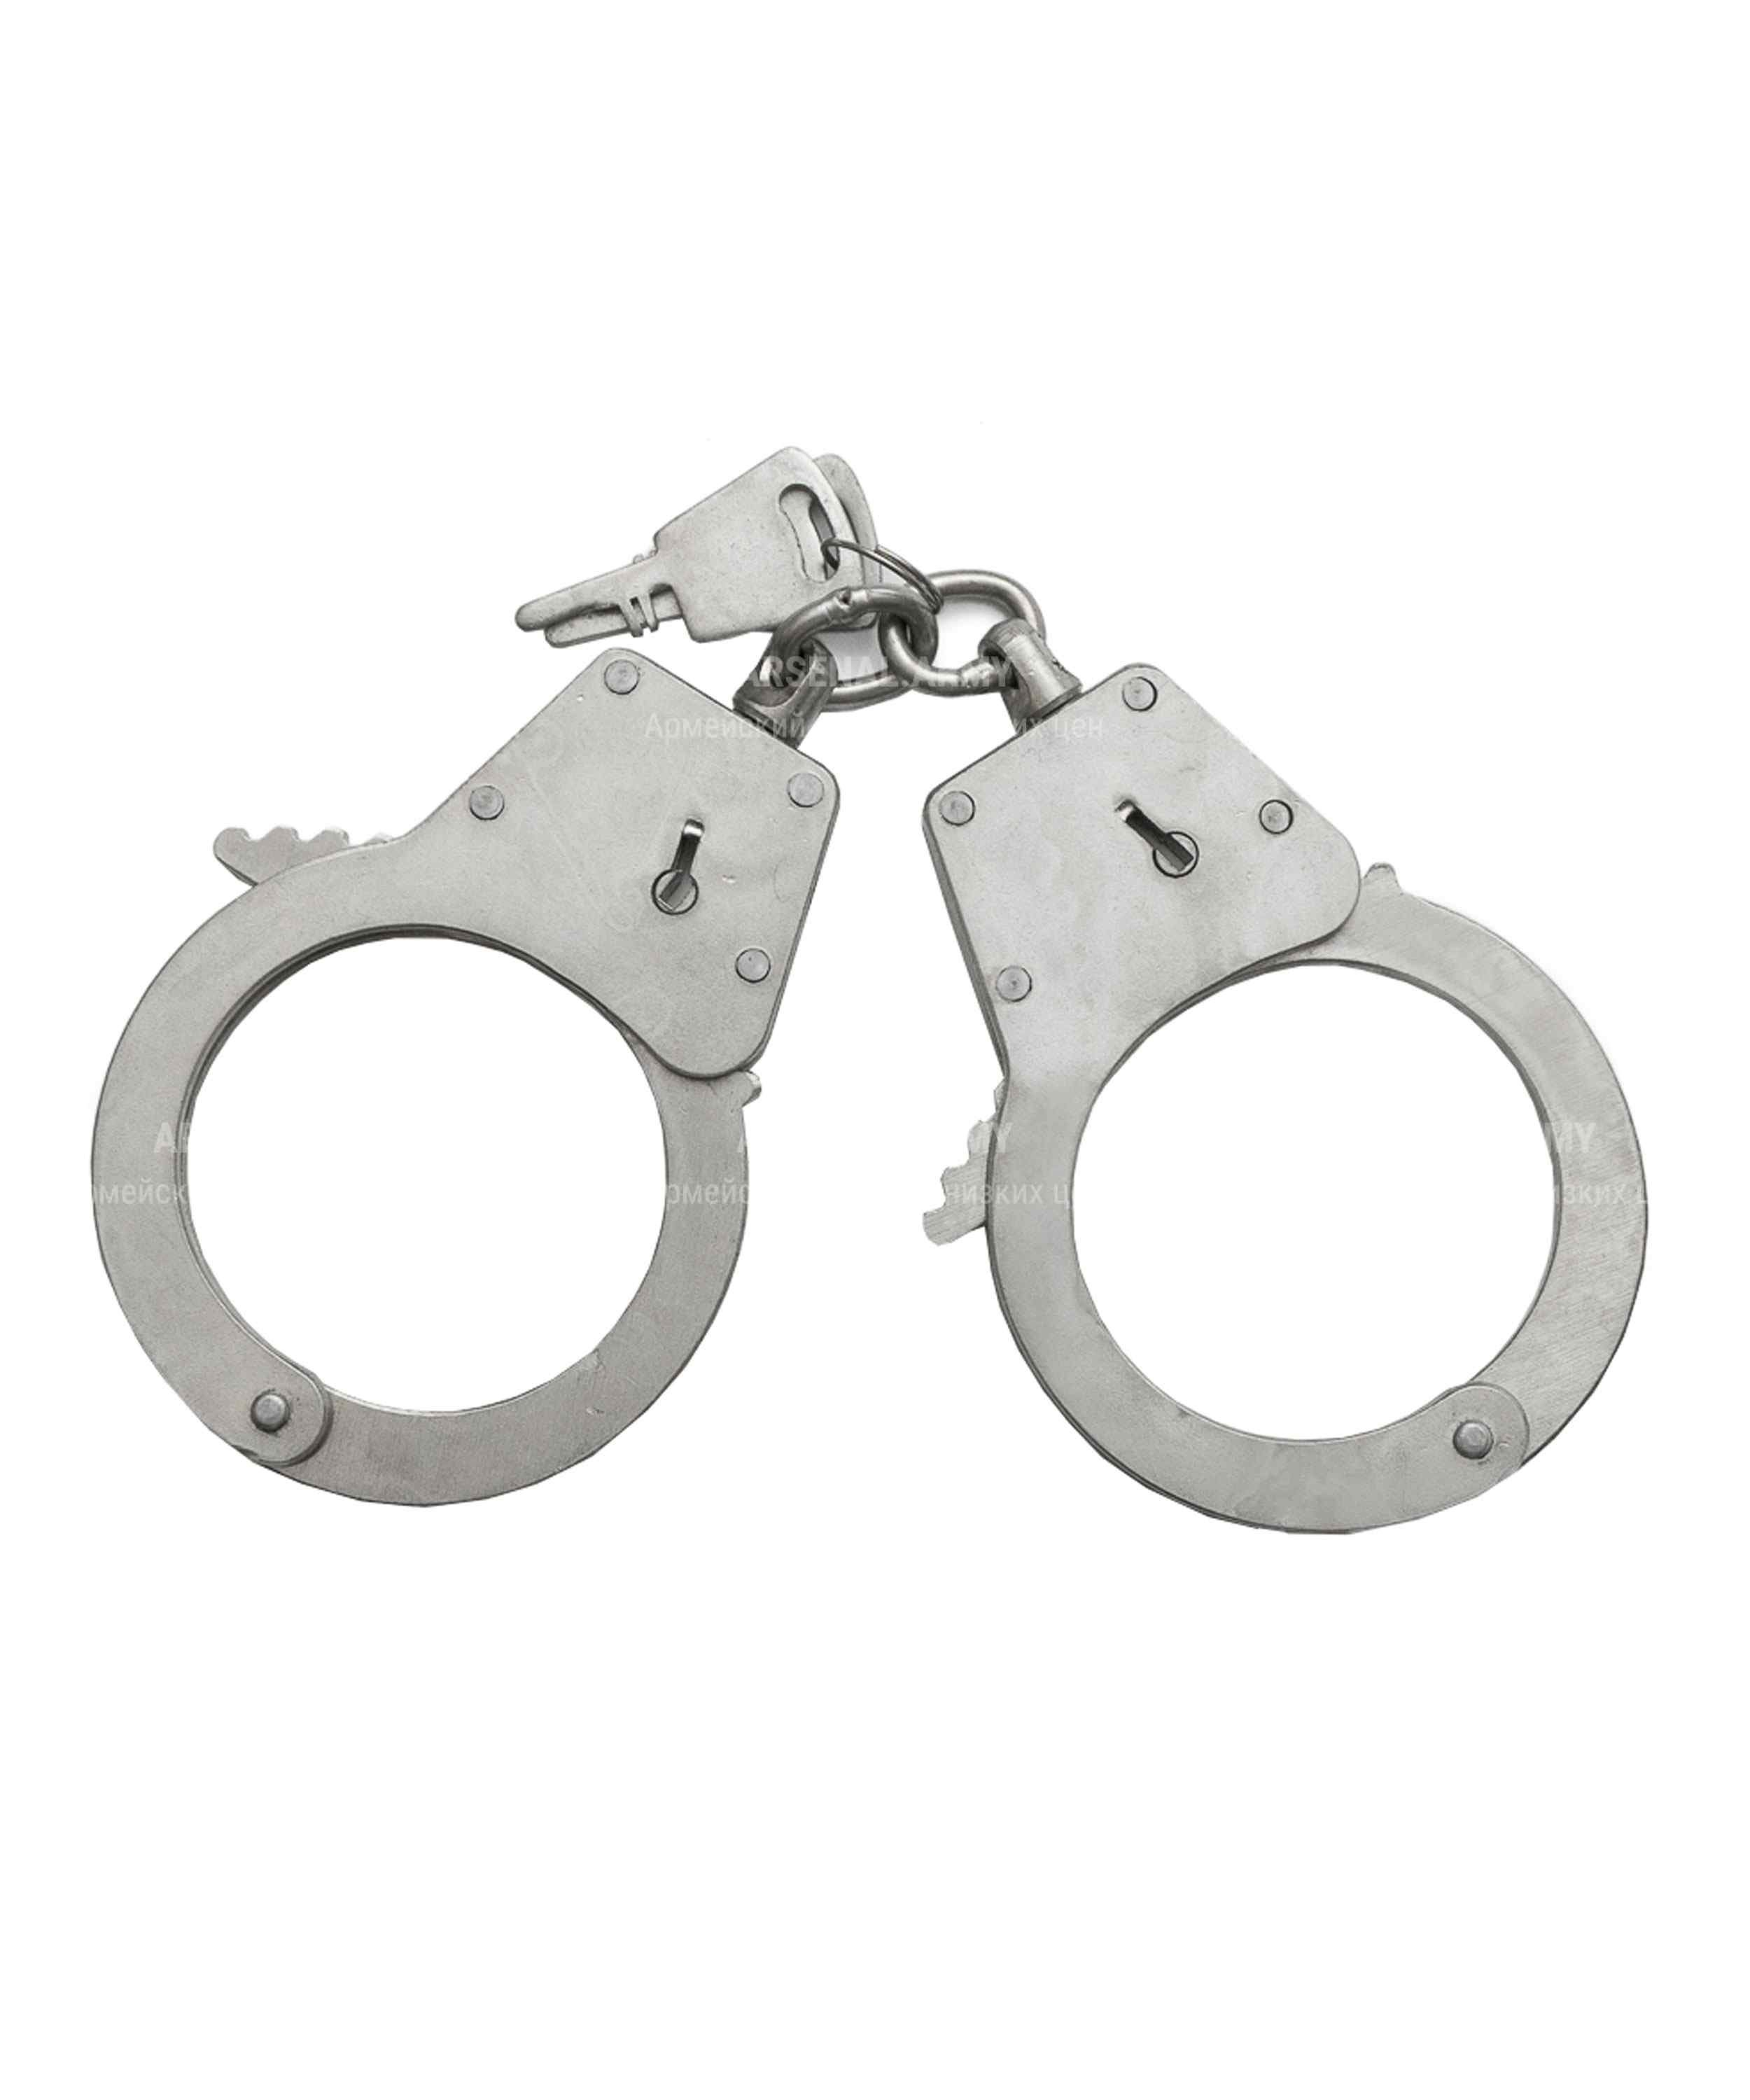 Металлические наручники Hand Cuffs (красные)